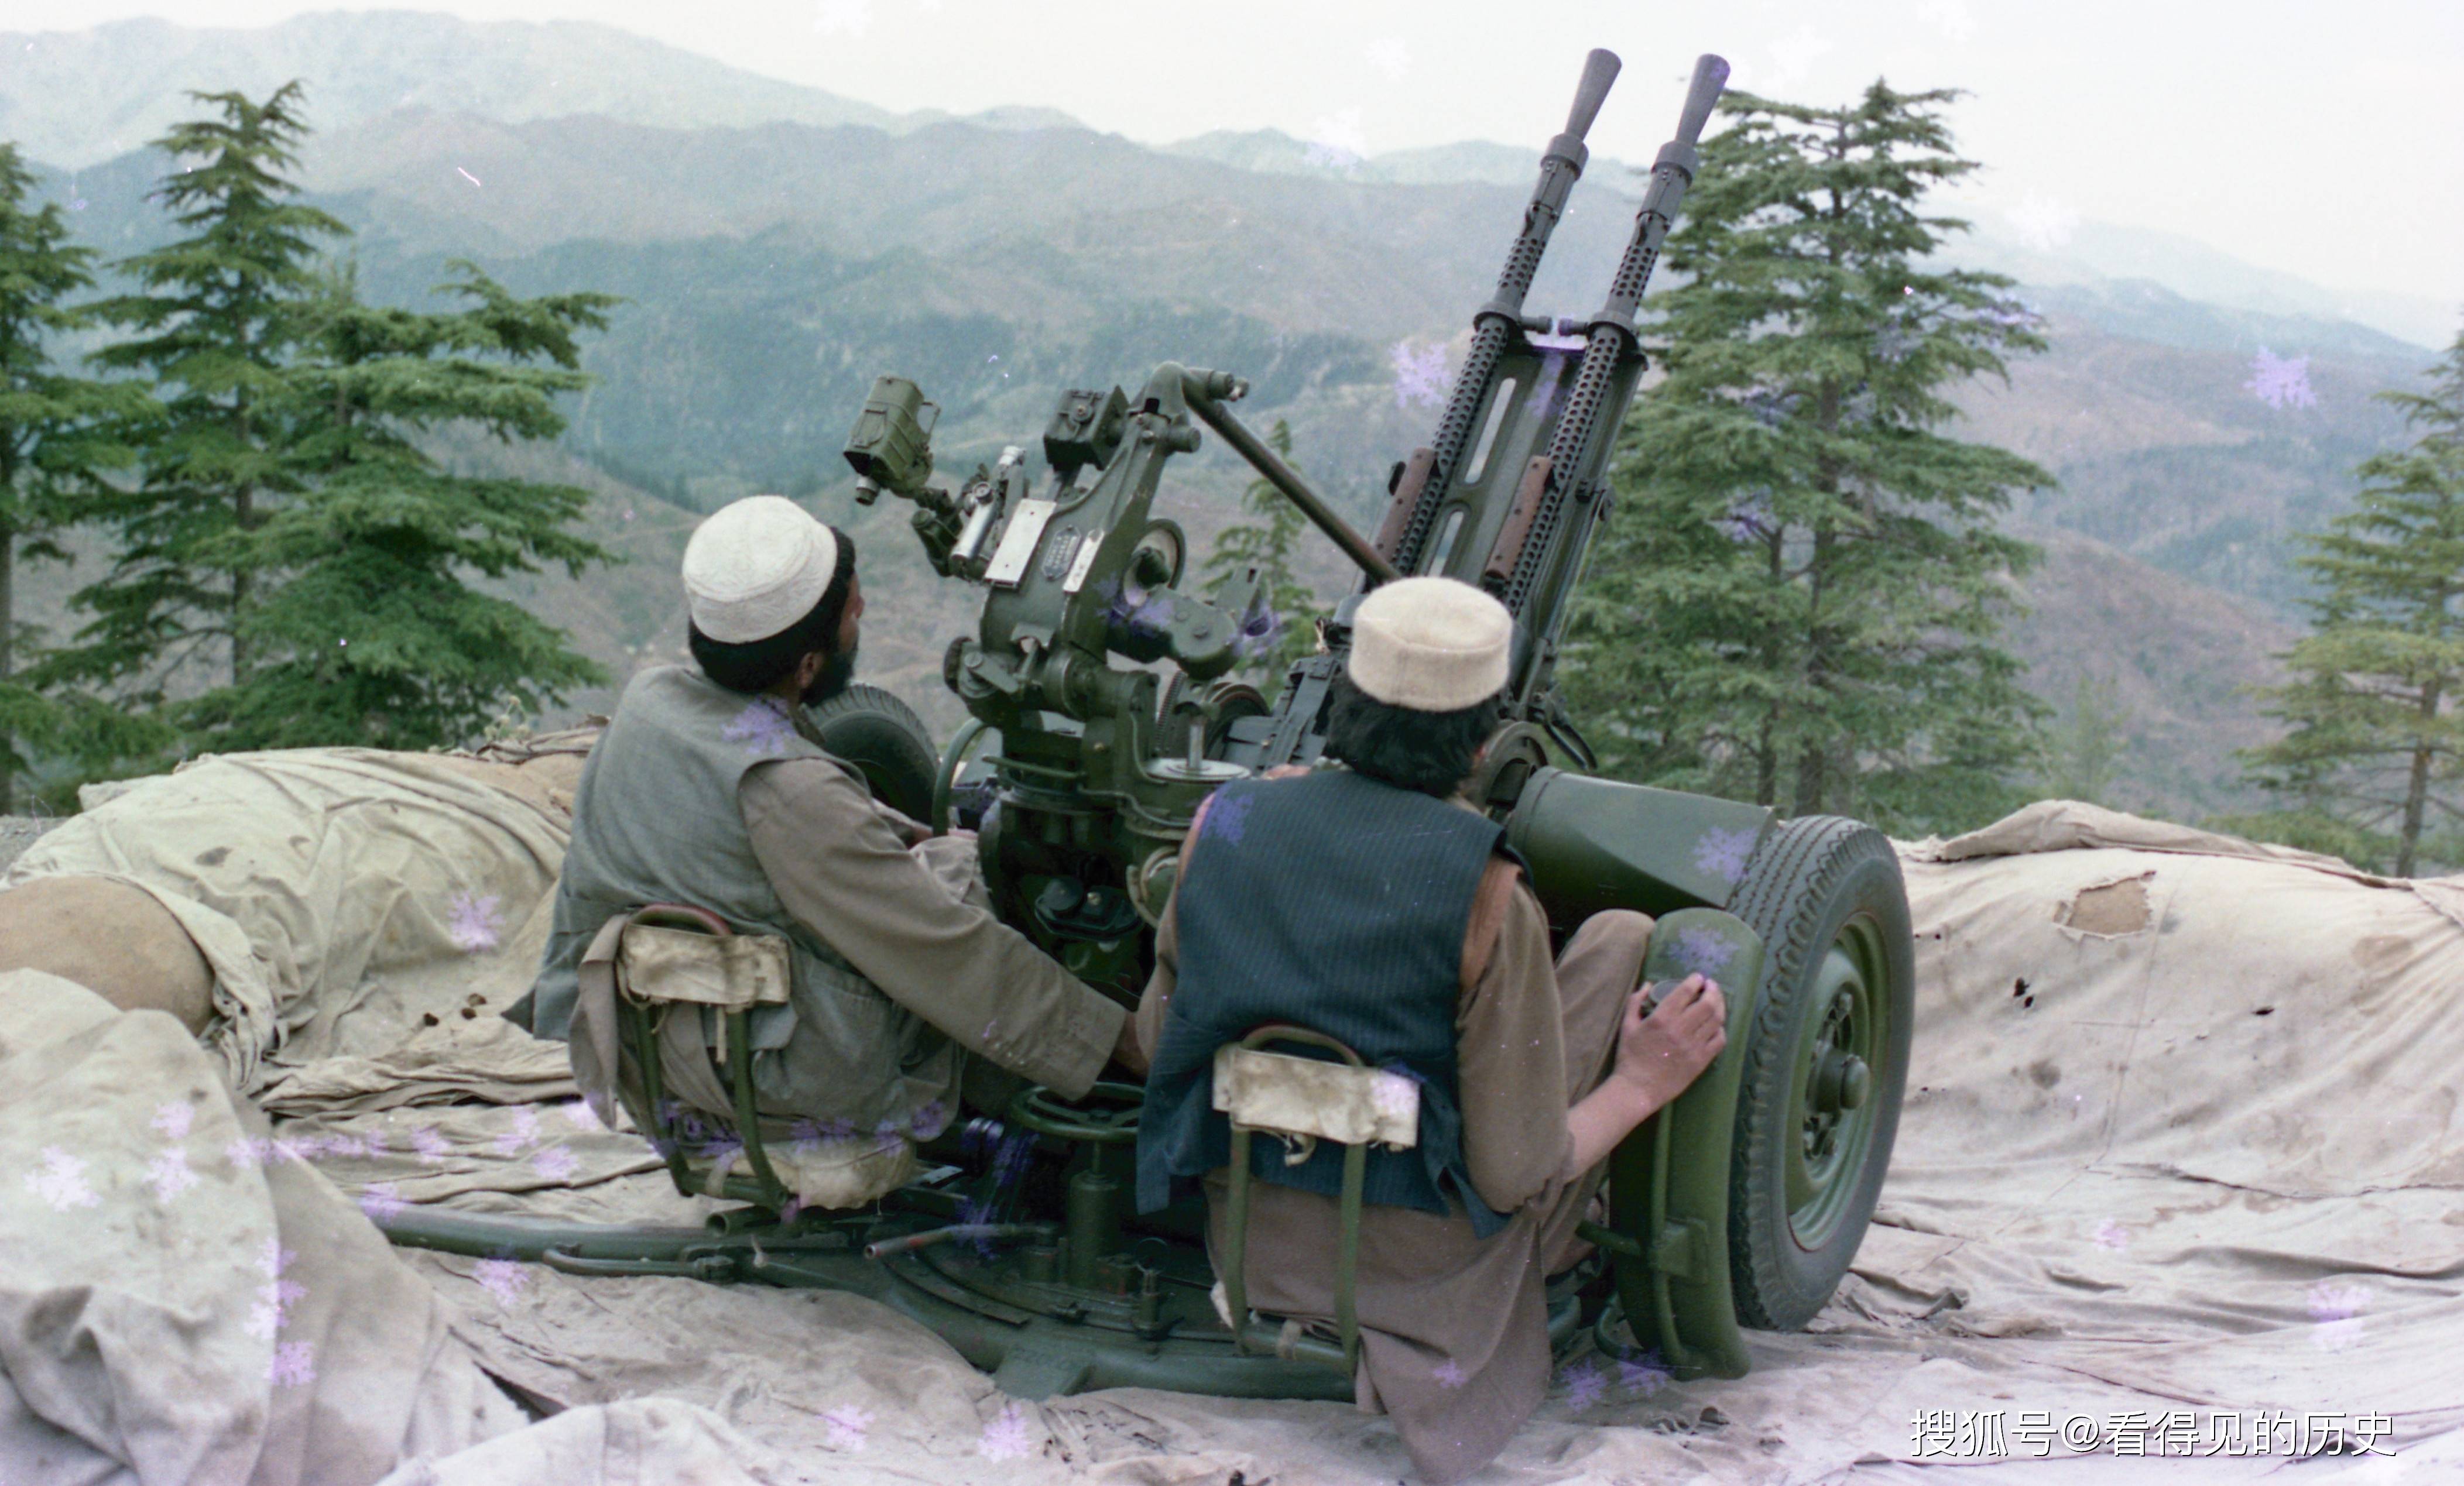 原创老照片 阿富汗游击队的高射炮 小孩的玩具